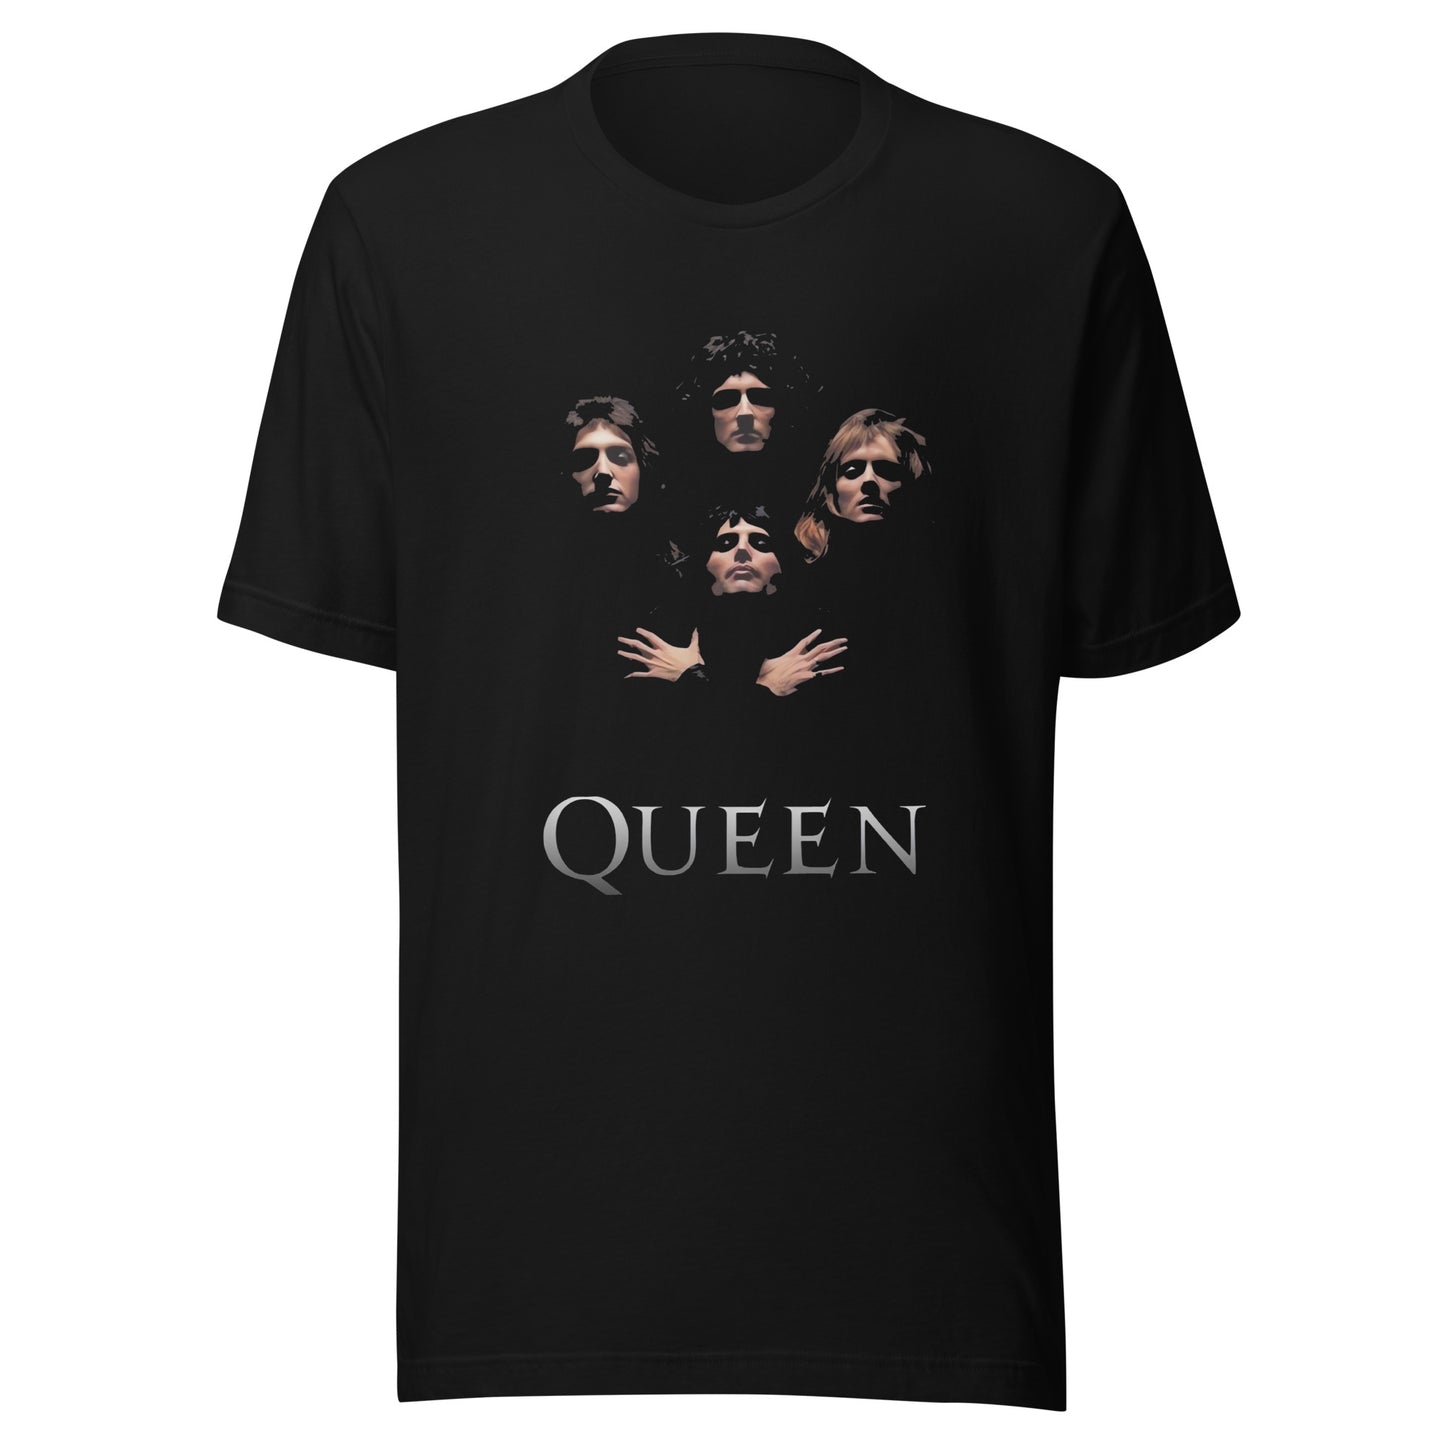 ¡Compra el mejor merchandising en Superstar! Encuentra diseños únicos y de alta calidad en playeras, Queen – Bohemian Rhapsody